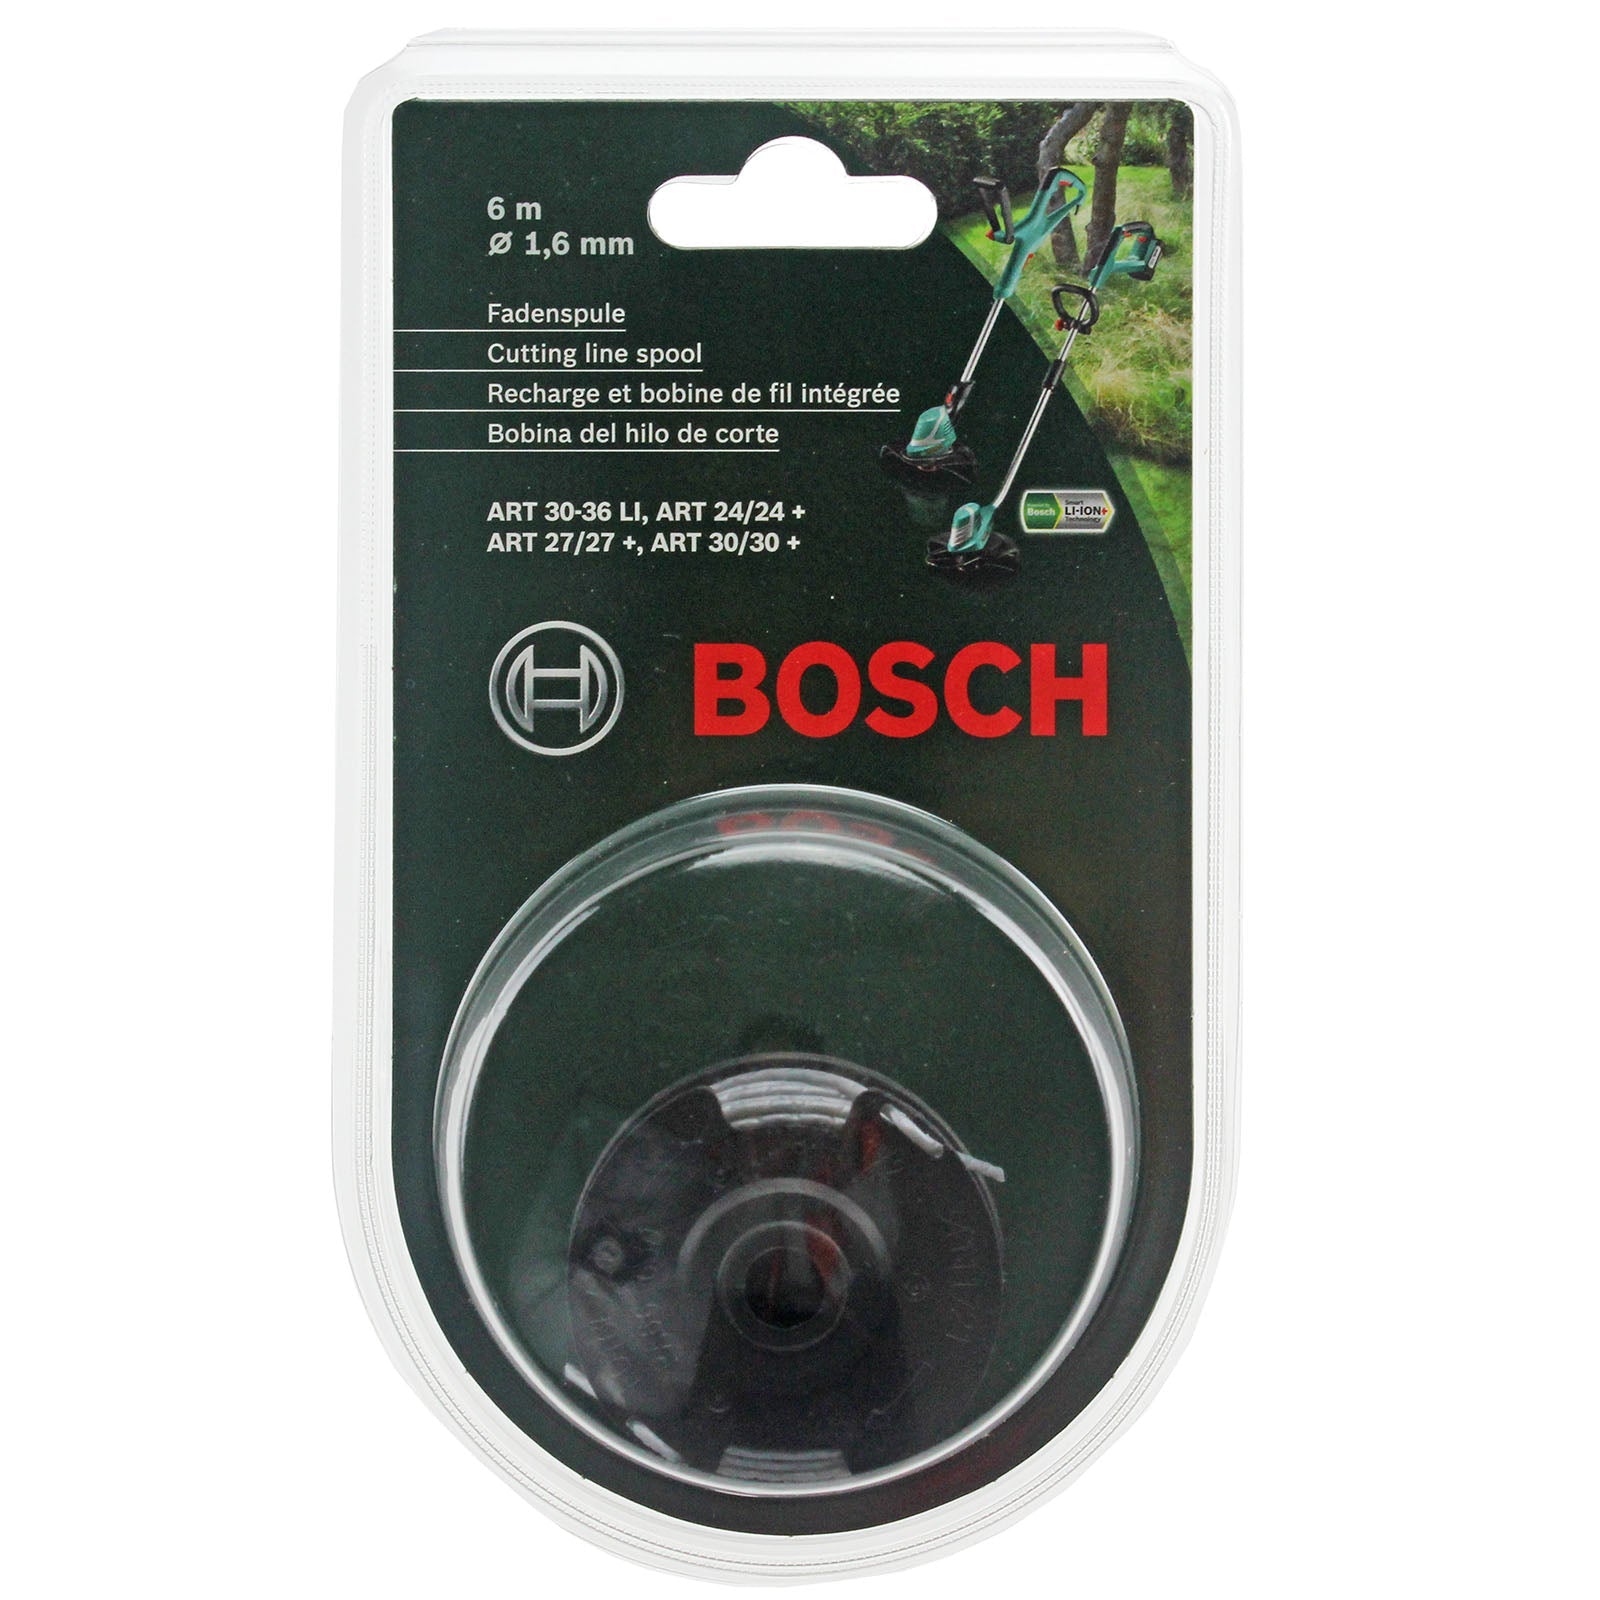 Bosch ART 24 27 30 30-36 LI Genuine Strimmer Trimmer Cutting Line Spool Feed 6m 1.6mm - F016800351